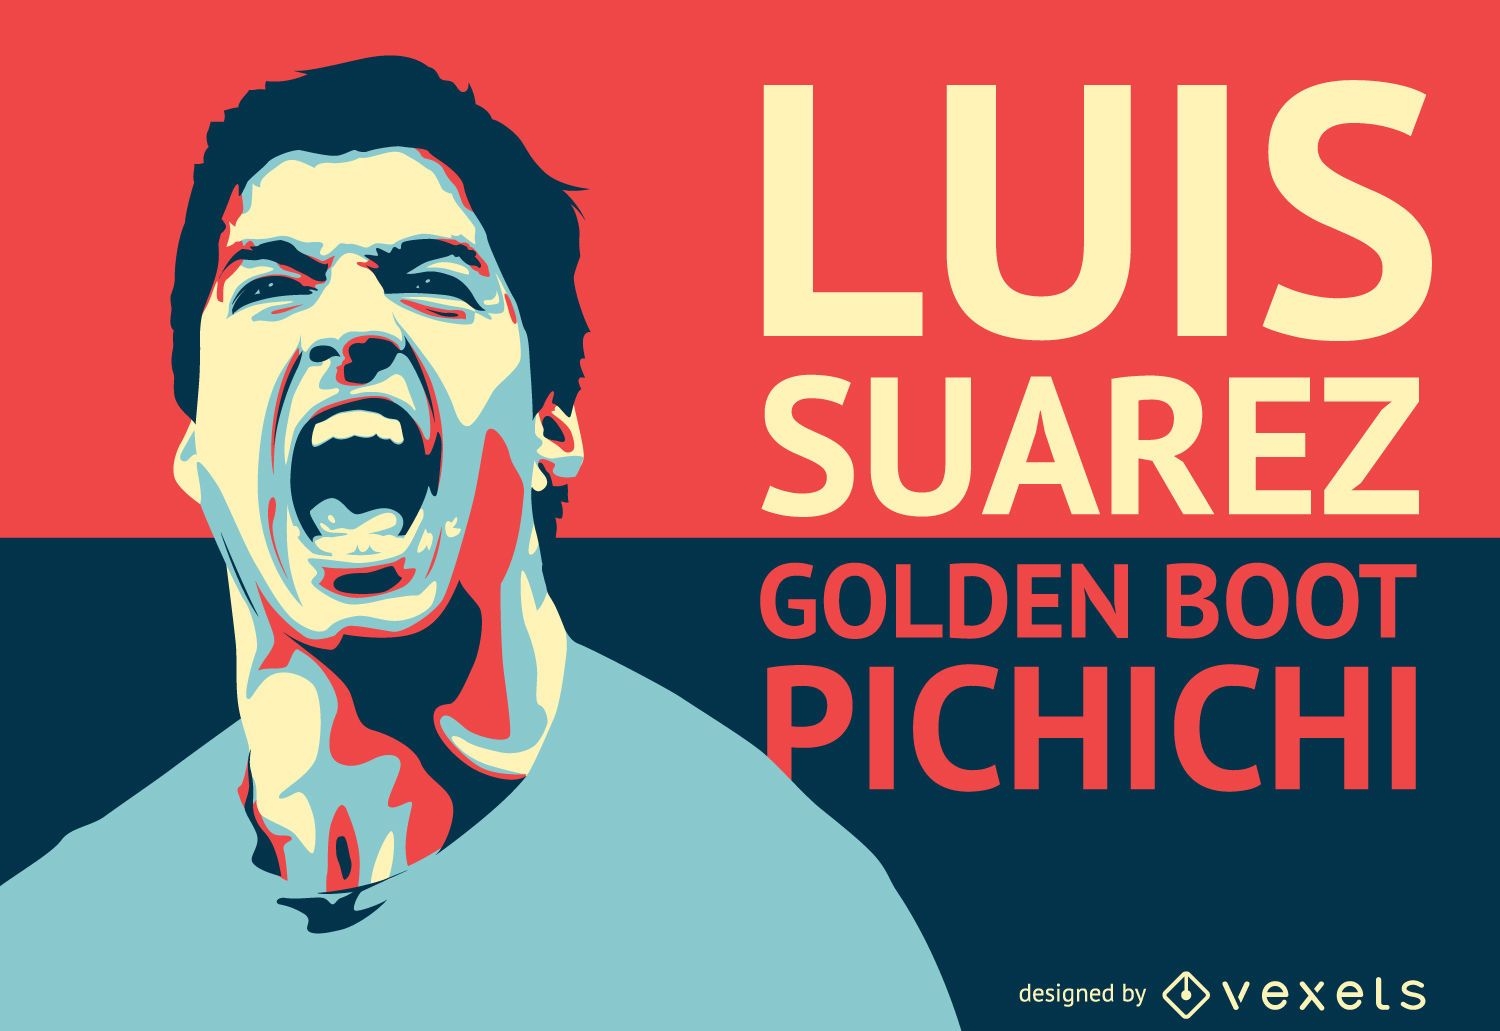 Ilustração do jogador de futebol Luis Suarez